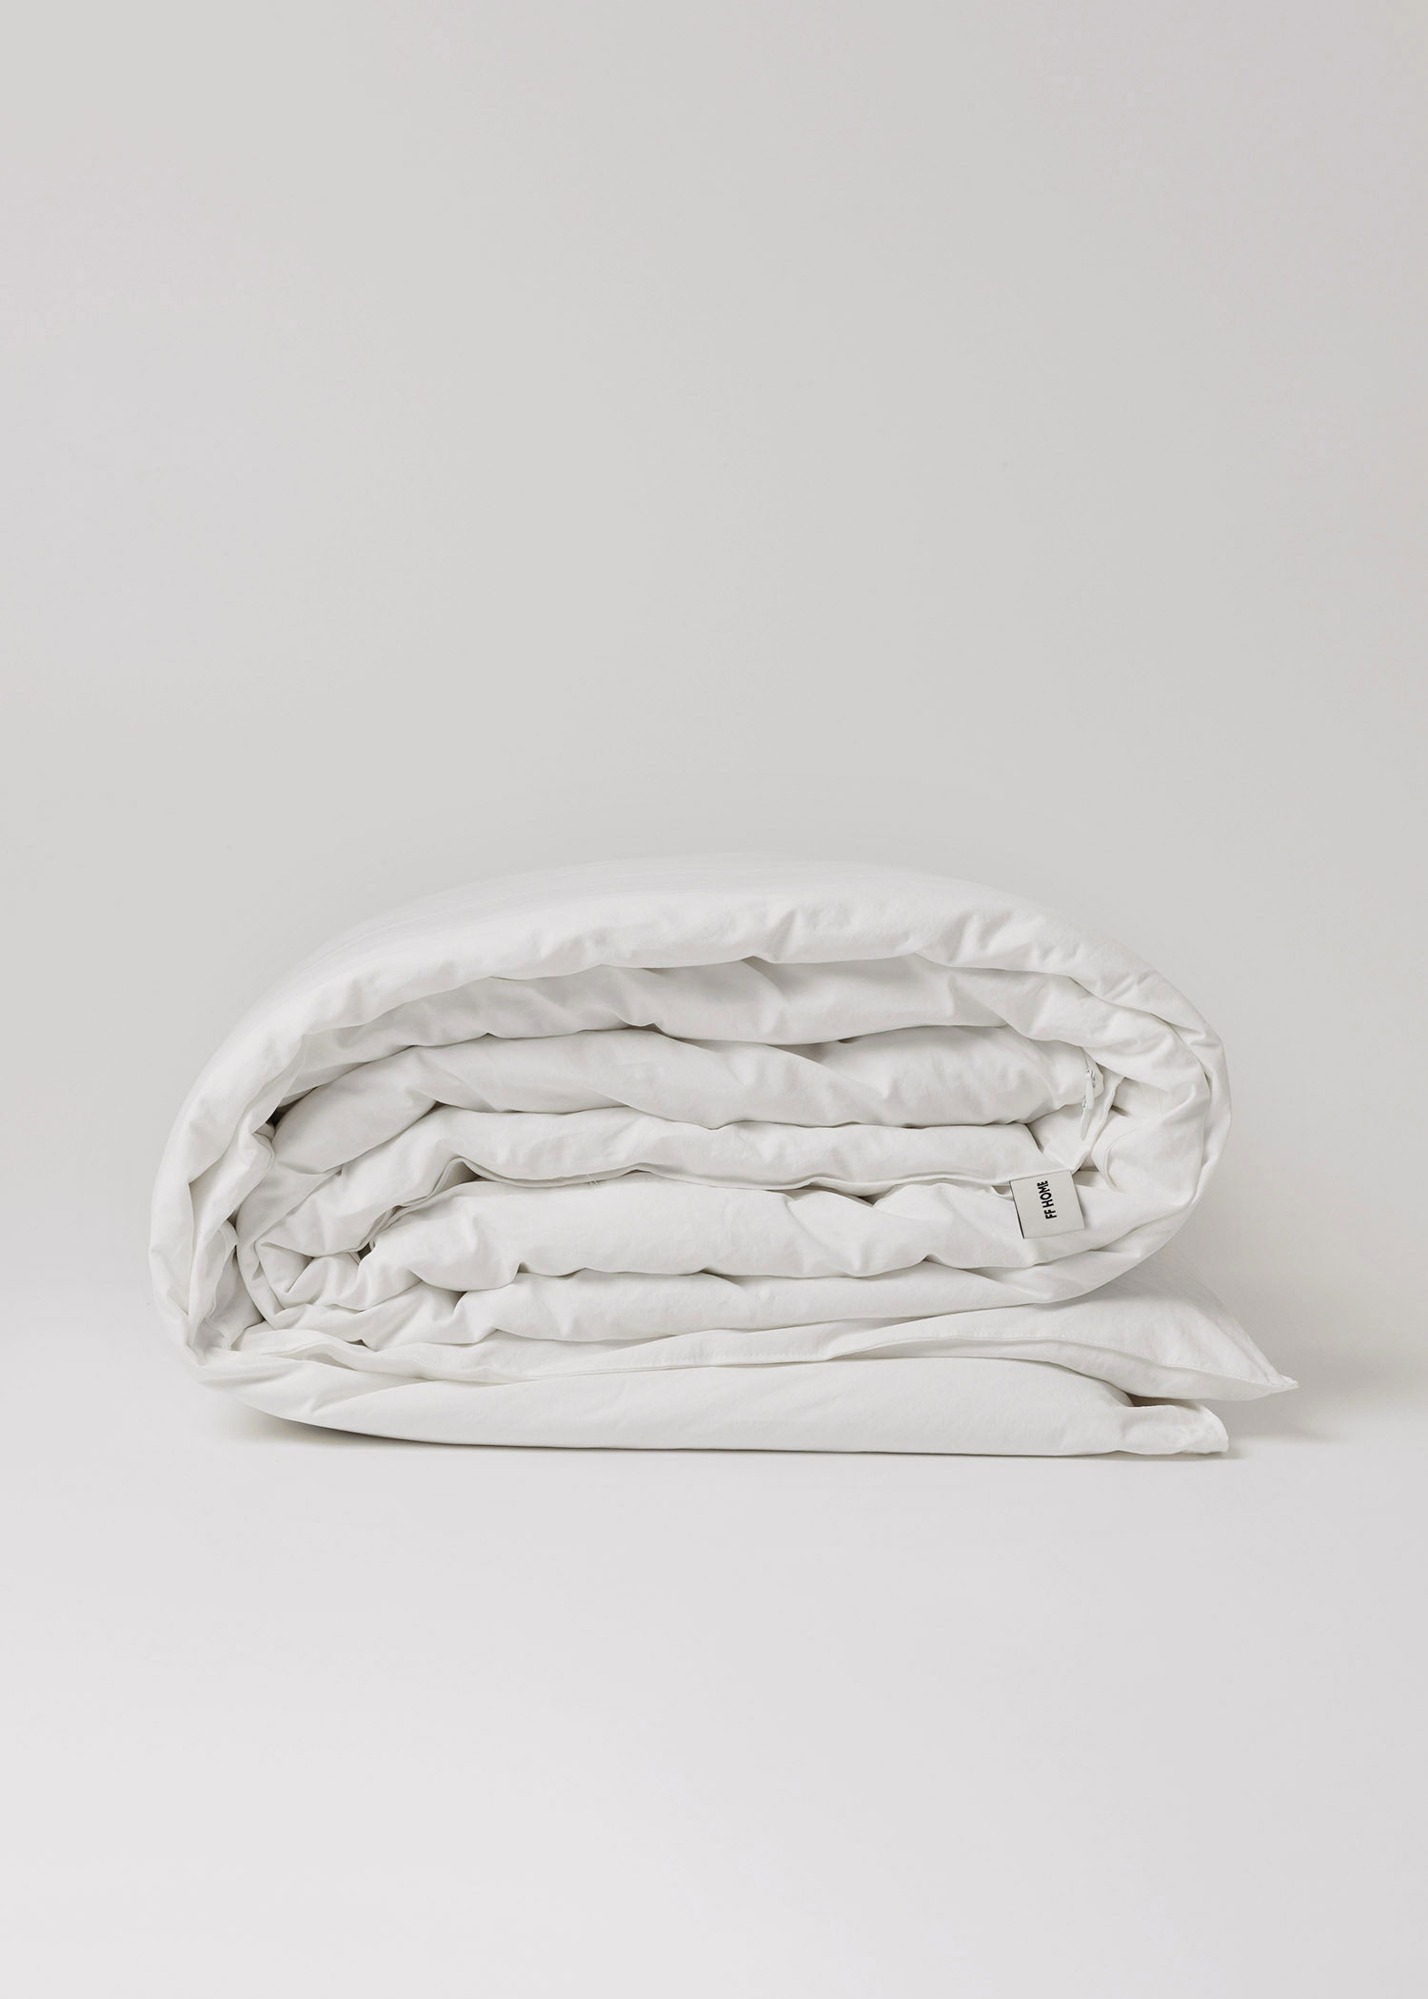 Linen Cotton Duvet Cover White